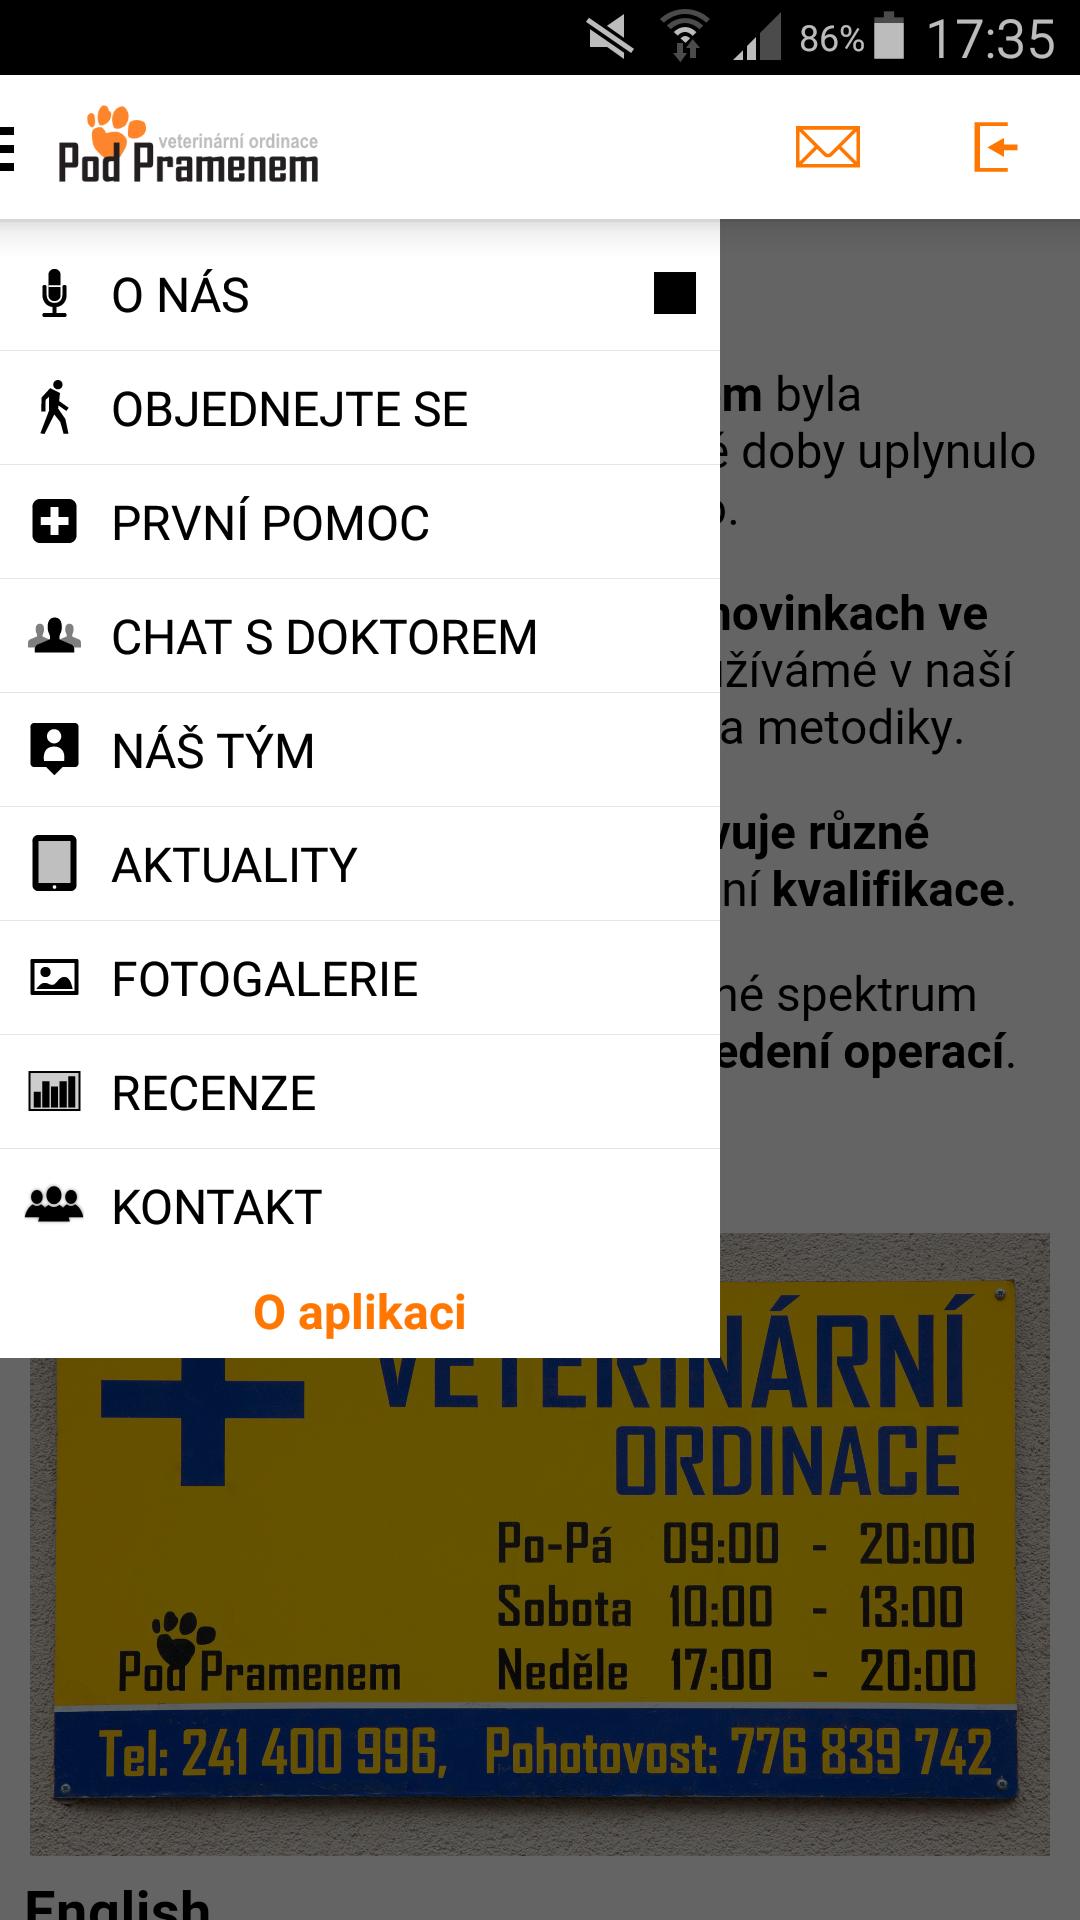 Veterina Pod Pramenem for Android - APK Download